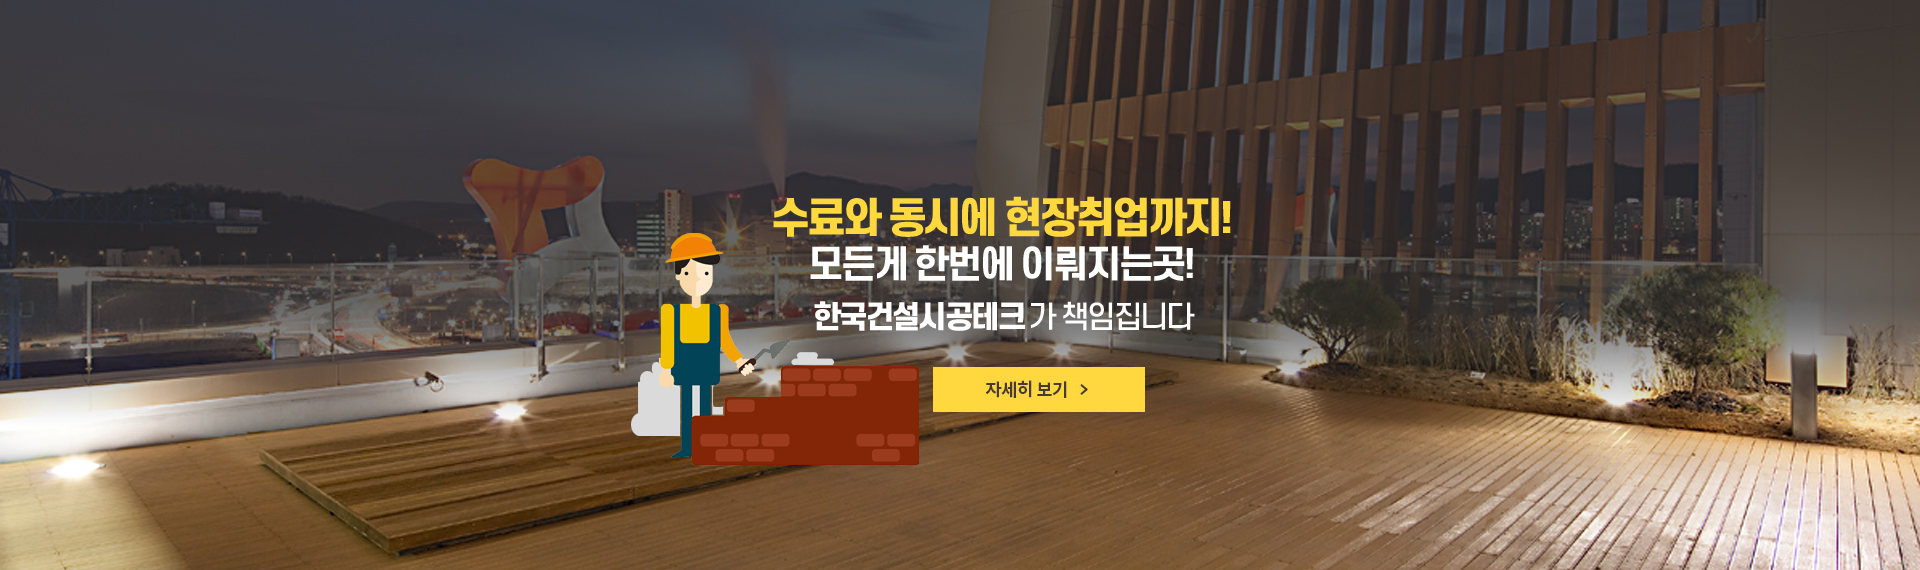 한국건설직업전문학교 인테리어시공실무과정